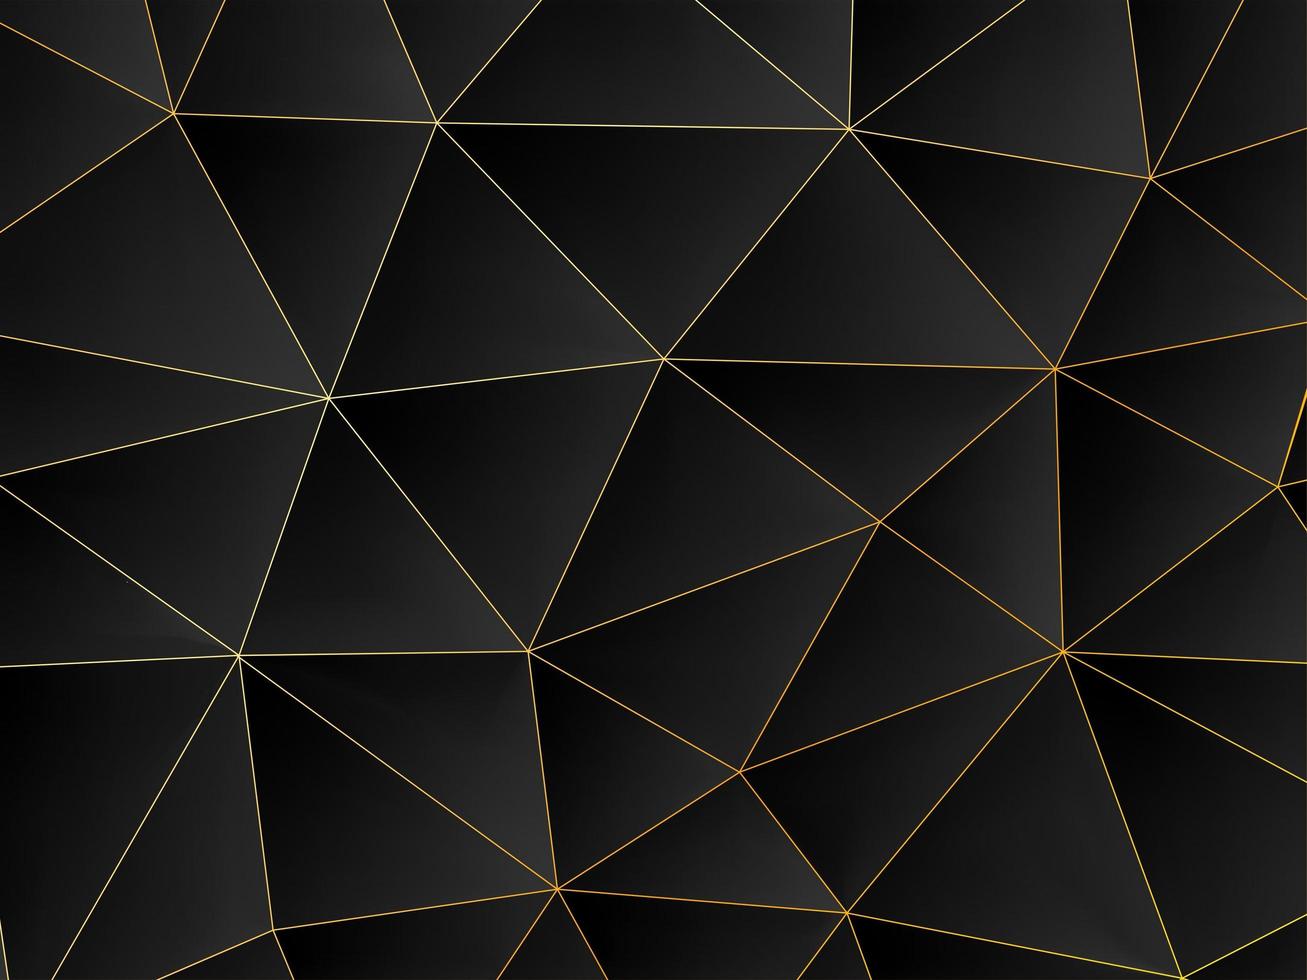 Triángulos abstractos negros 3d y fondo de líneas doradas. patrón geométrico moderno libre de vidrio oscuro foto